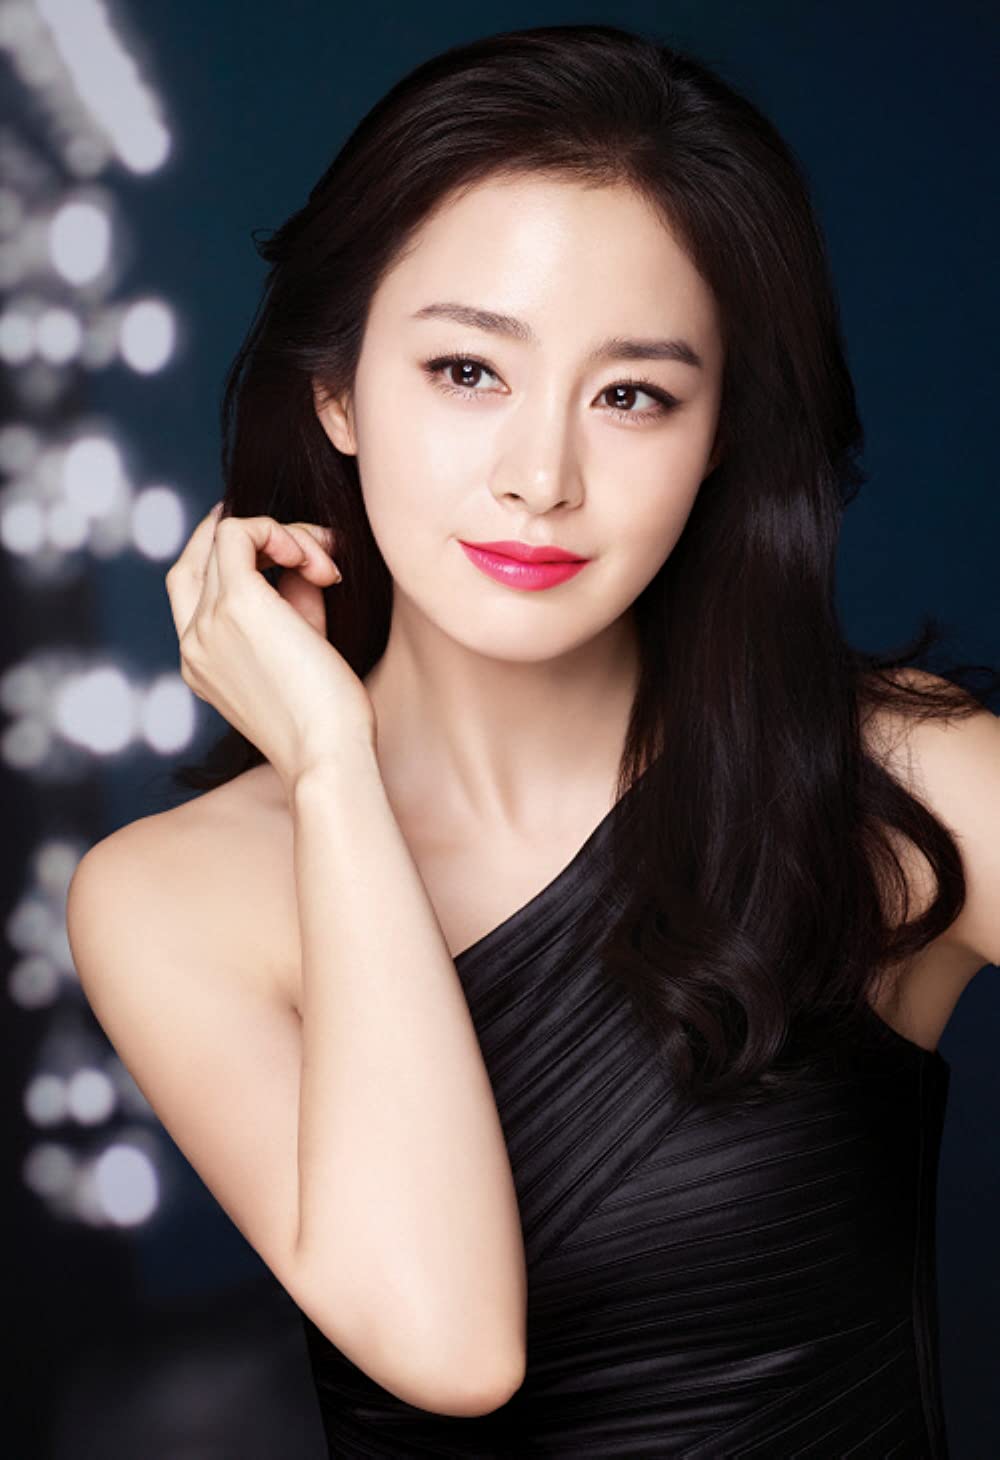 Top 5 mỹ nữ của giới giải trí Hàn do netizen Trung bầu chọn: Kim Tae Hee, Song Hye Kyo ngoài 40 vẫn được gọi tên - Ảnh 4.